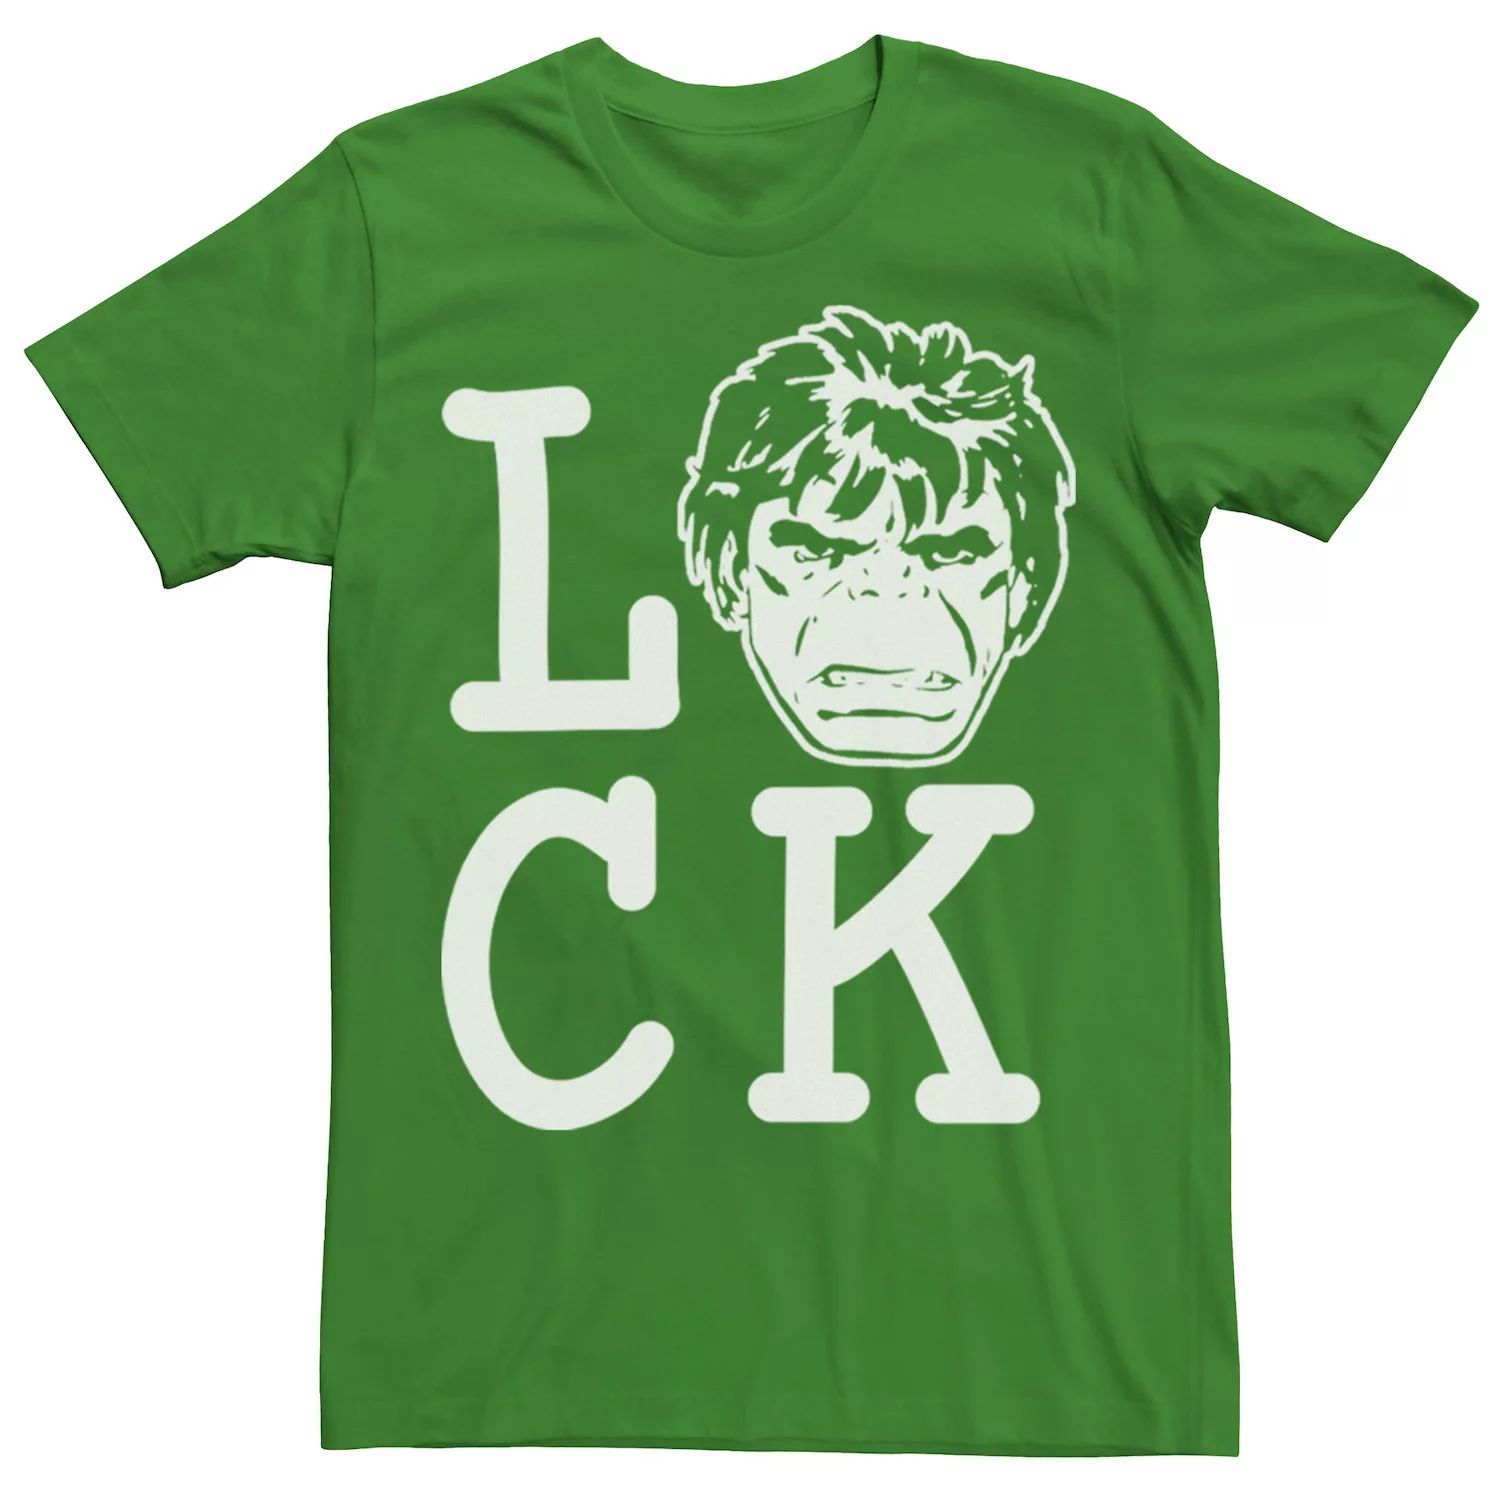 Мужская футболка с надписью «Hulk Lucky» ко Дню Святого Патрика Marvel